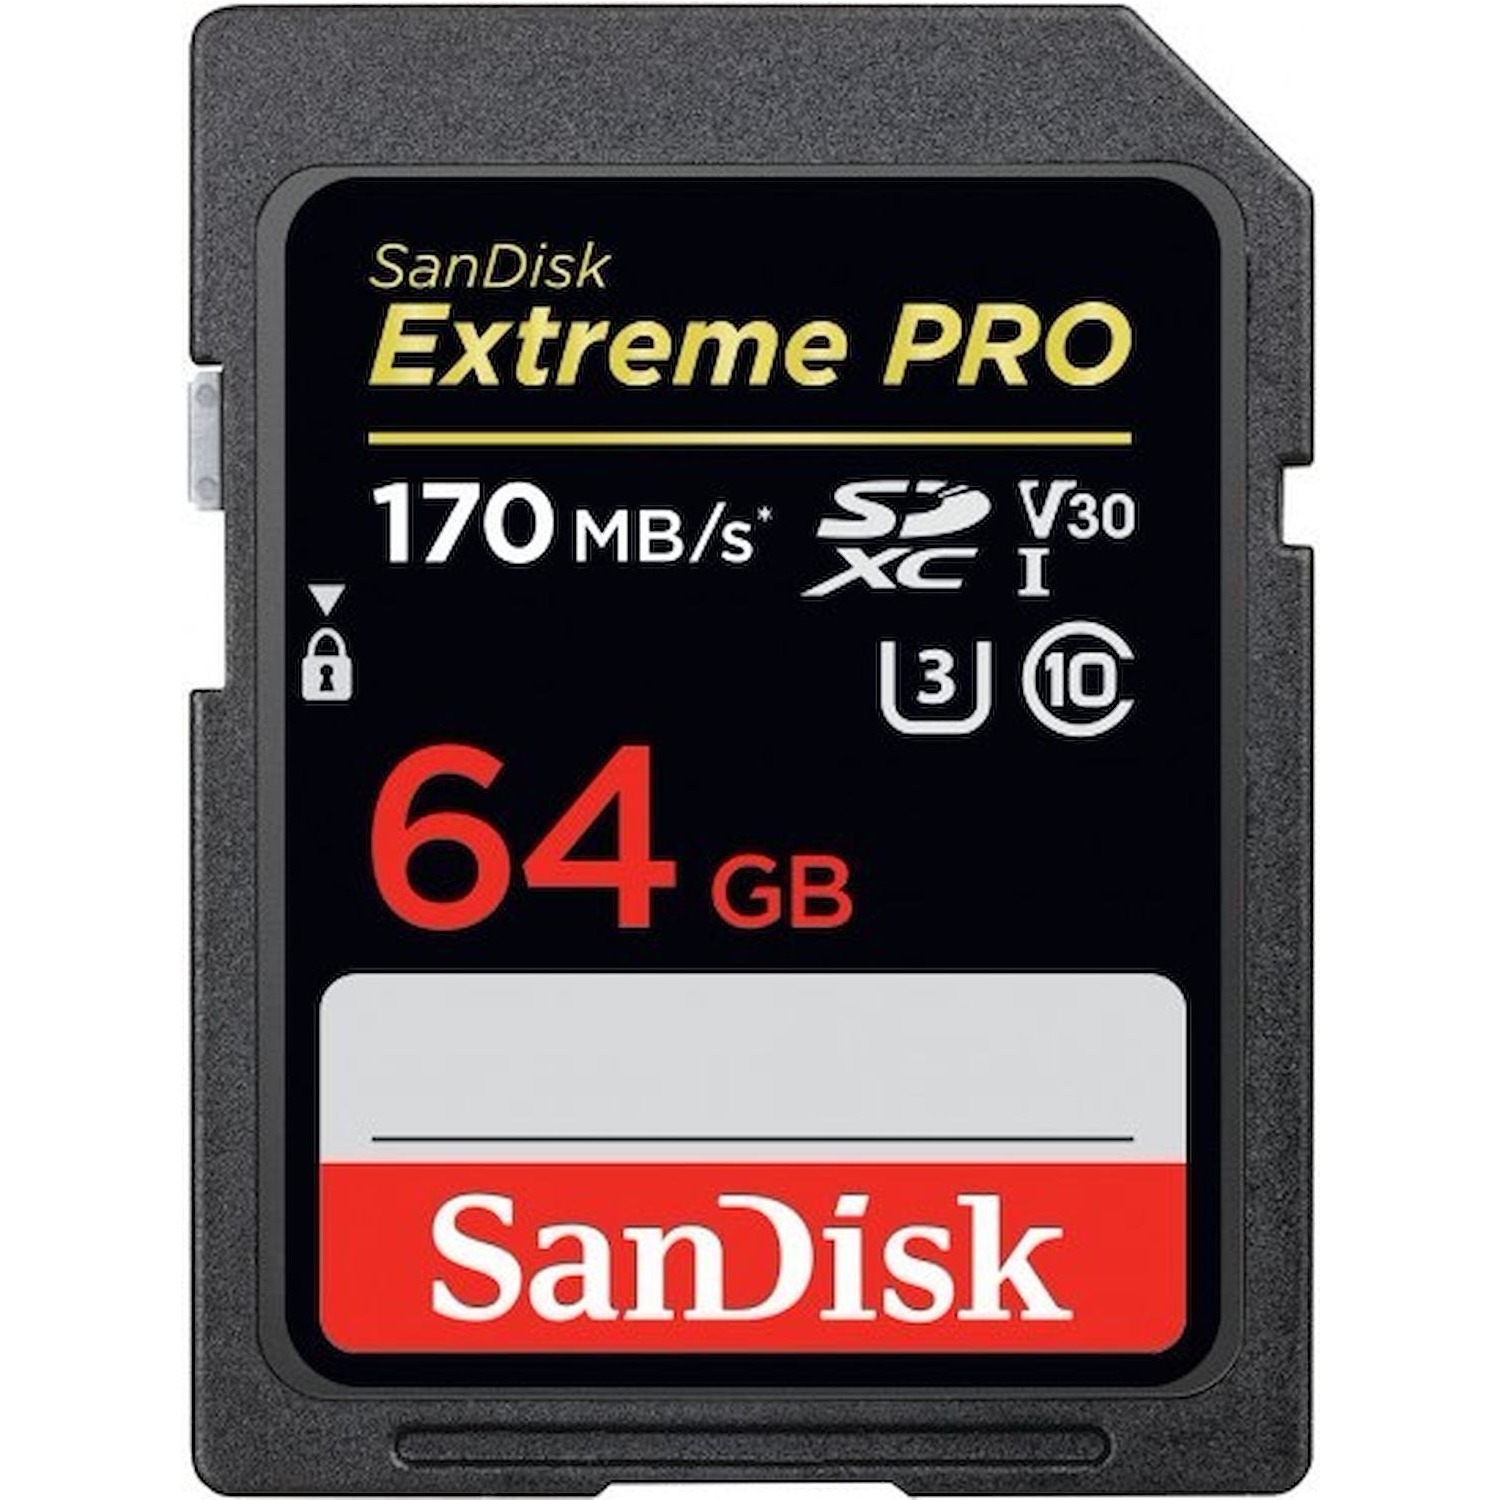 Immagine per SD San Disk 64GB Extreme Pro XC da DIMOStore